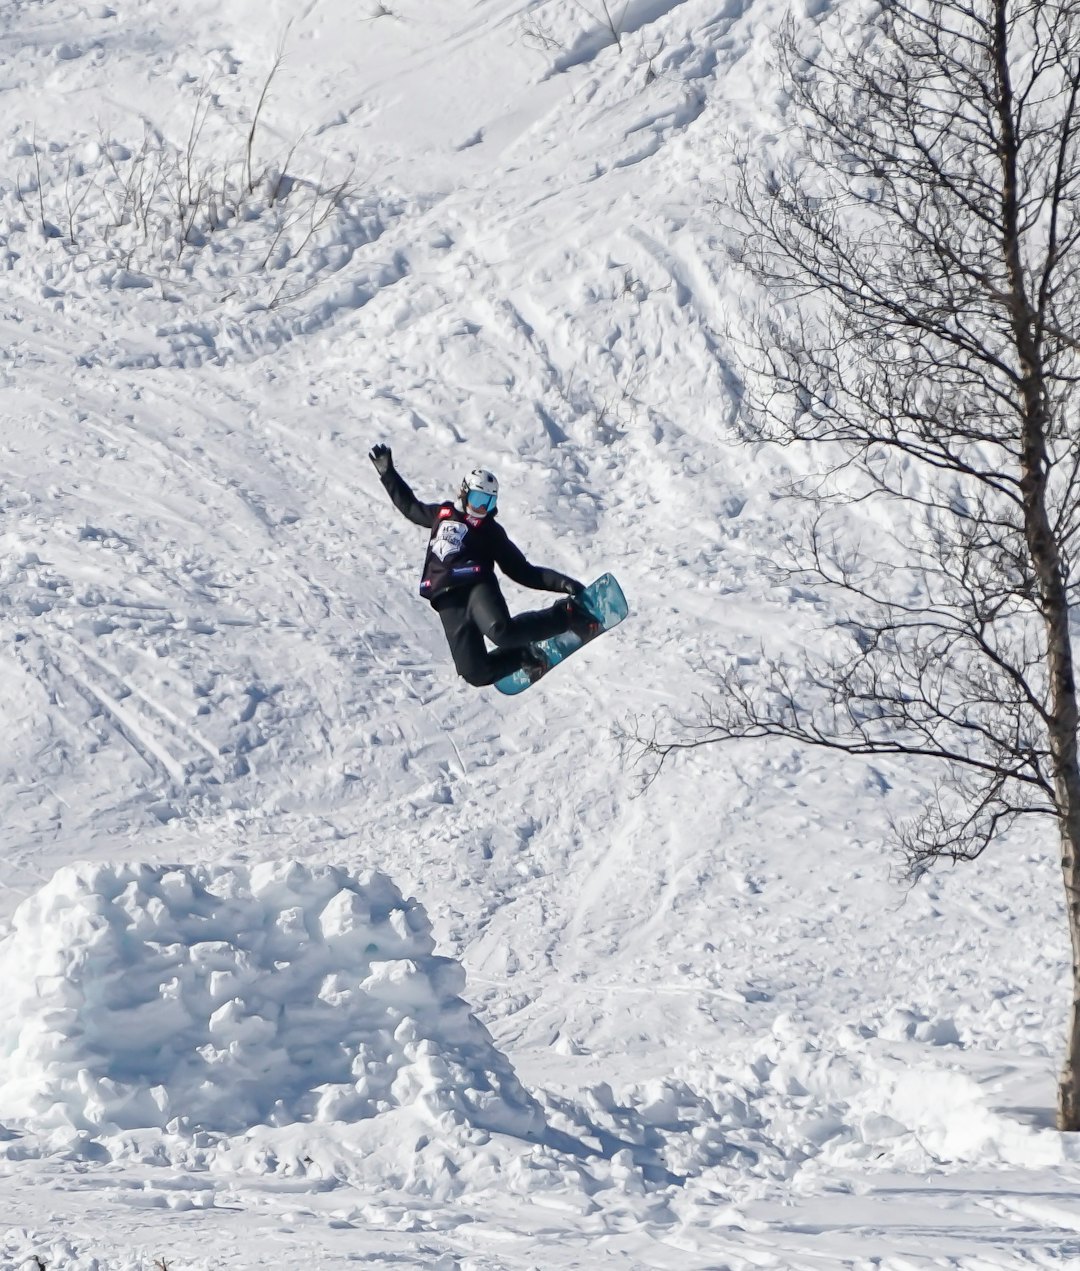 FULL HØKK: Snowboardkjører Caroline Onarheim gjør en methodgrab på det ene hoppet i løypa. Foto: Erland Holen